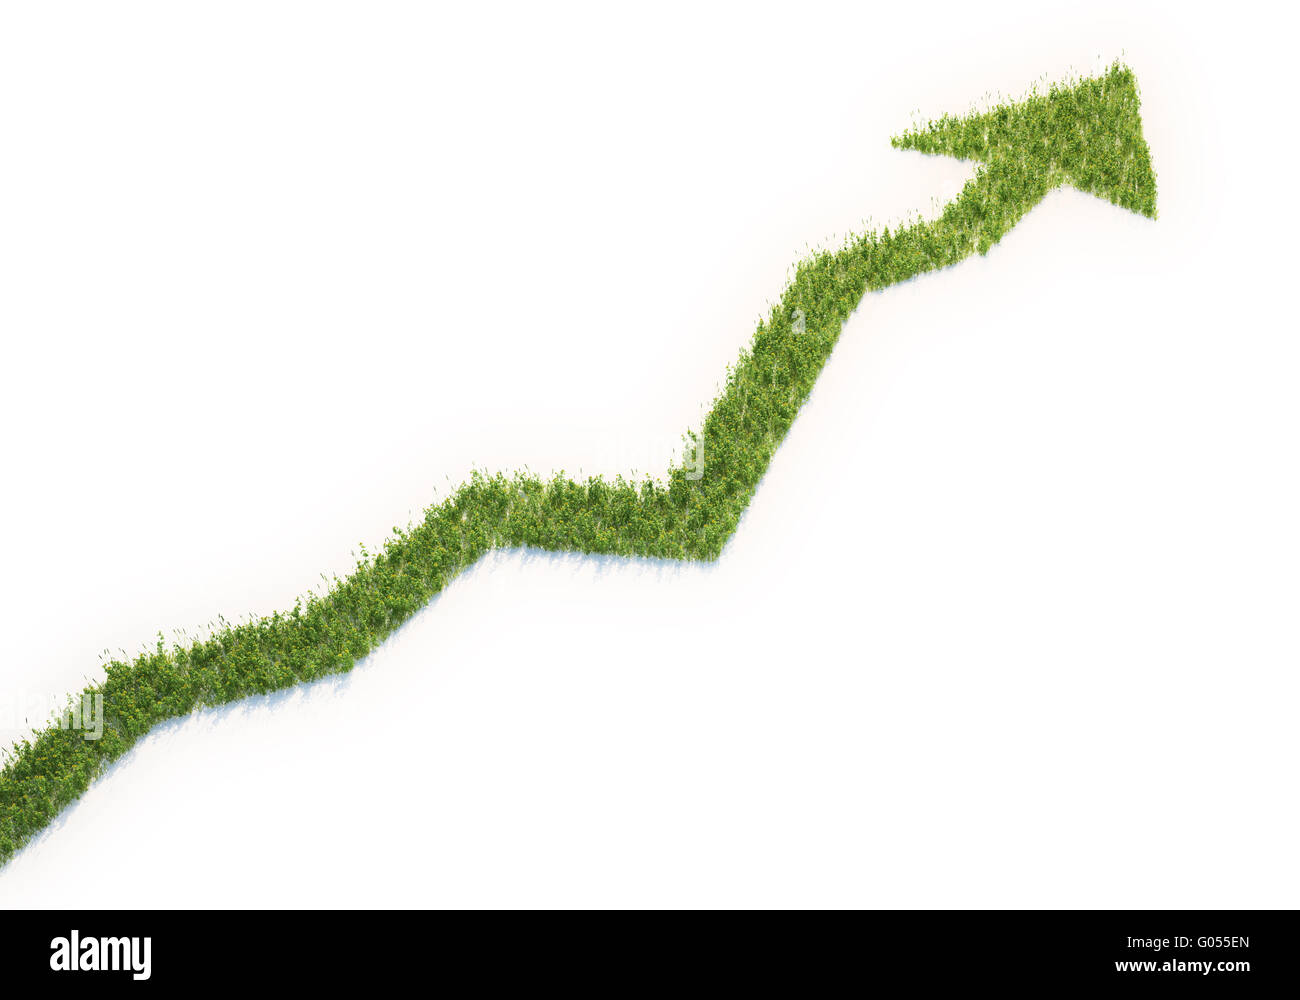 Grass Patch geformt wie ein Diagramm - Eco-Business-Konzept Stockfoto